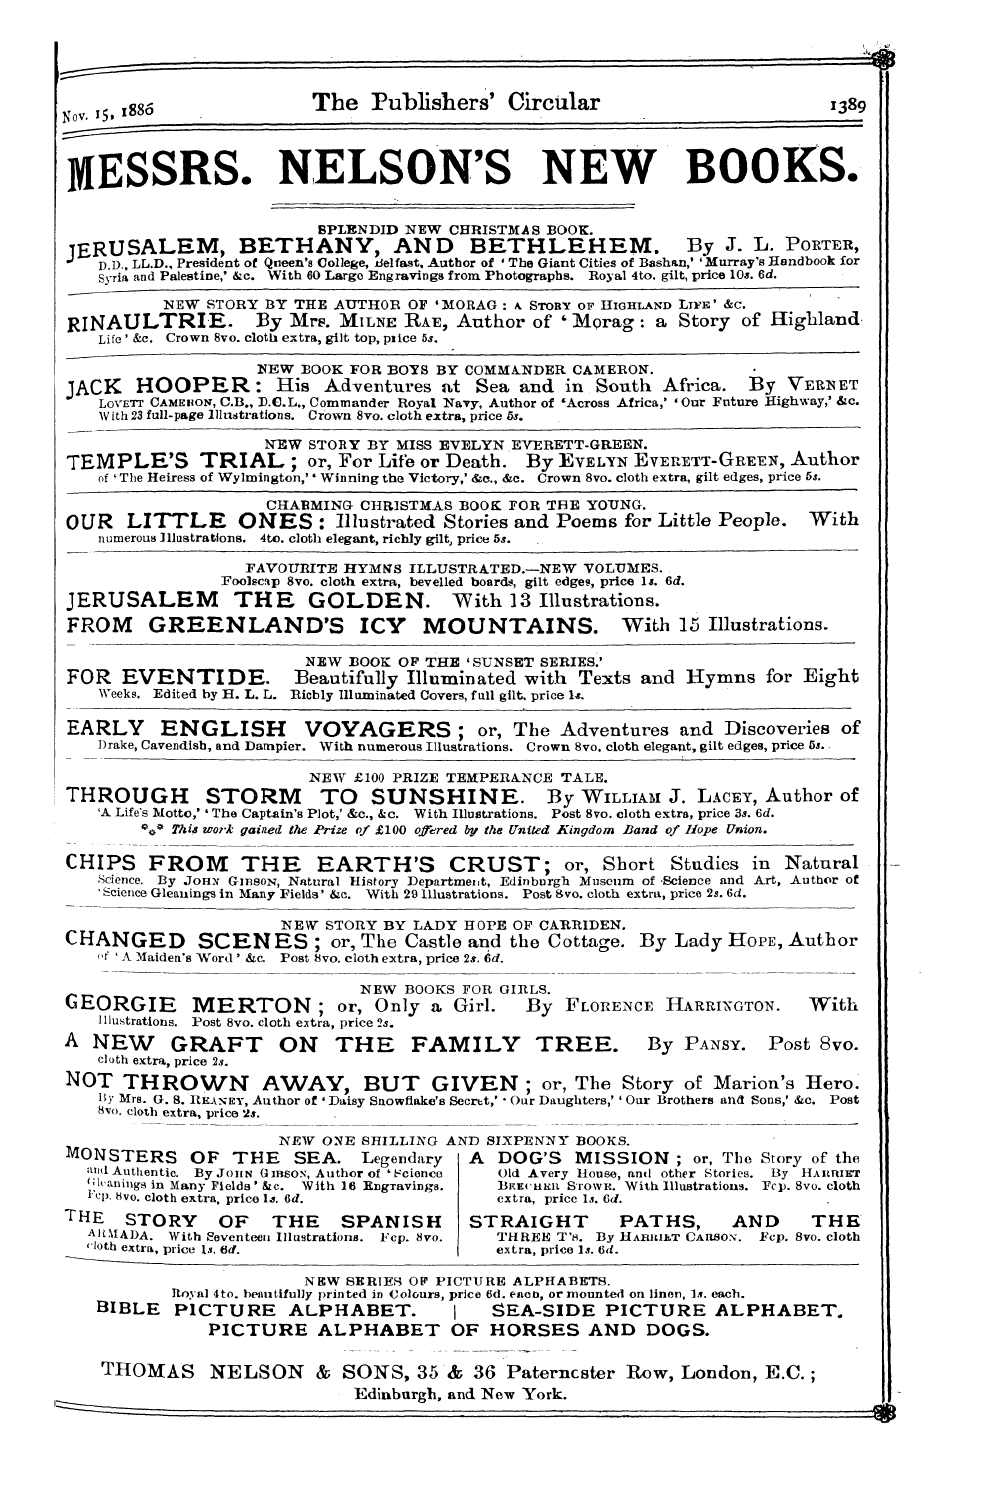 Publishers’ Circular (1880-1890): jS F Y, 1st edition - Ar03100